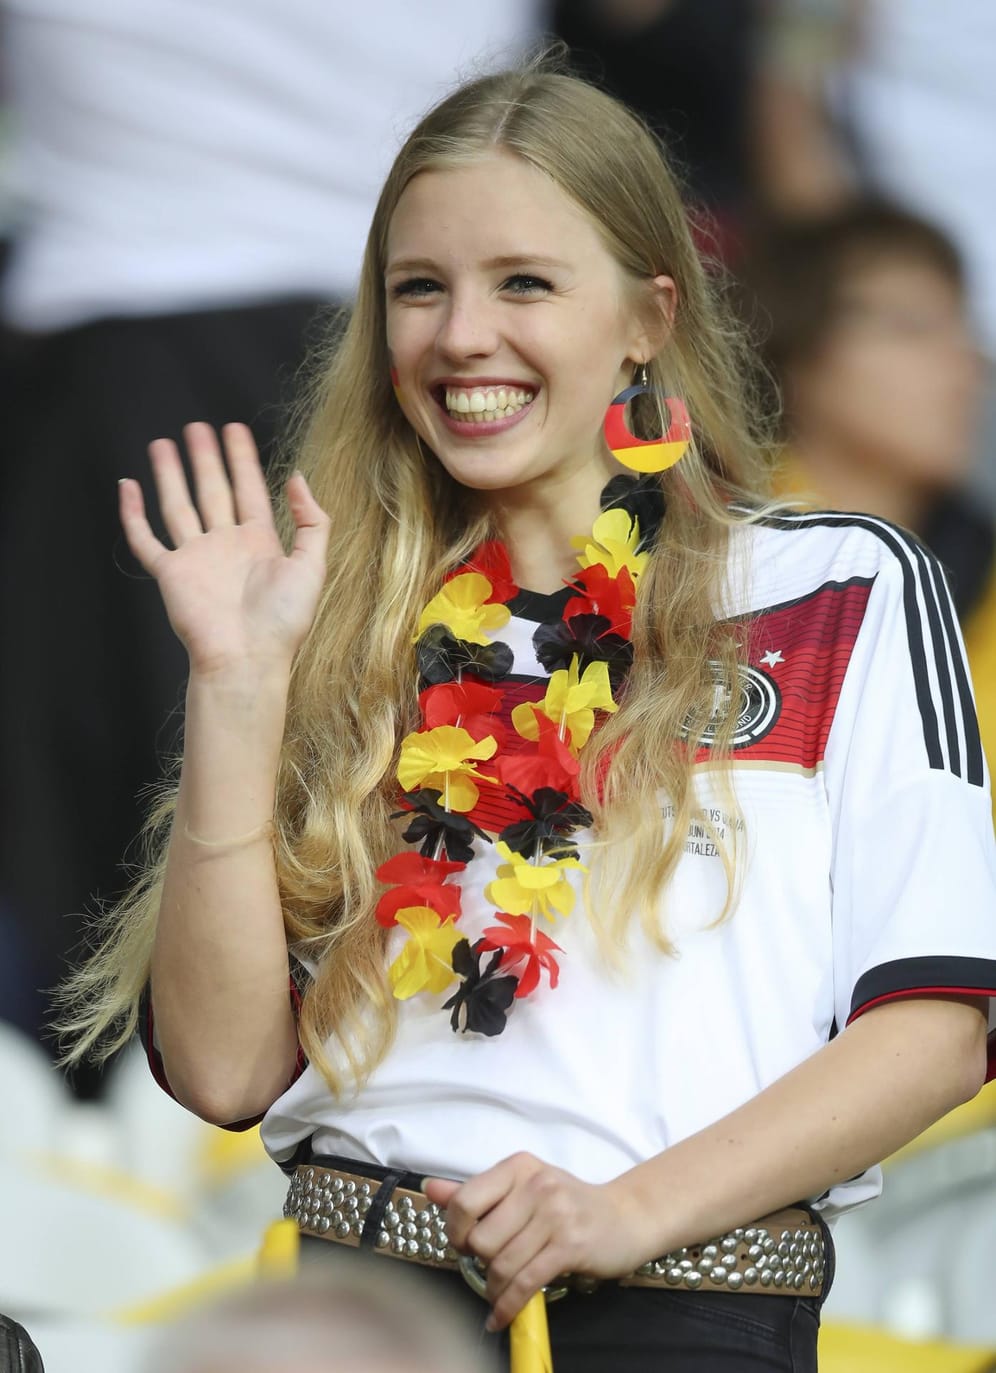 Auch diese junge Frau konnte den Sieg der deutschen Nationalmannschaft im ersten Spiel bejubeln.